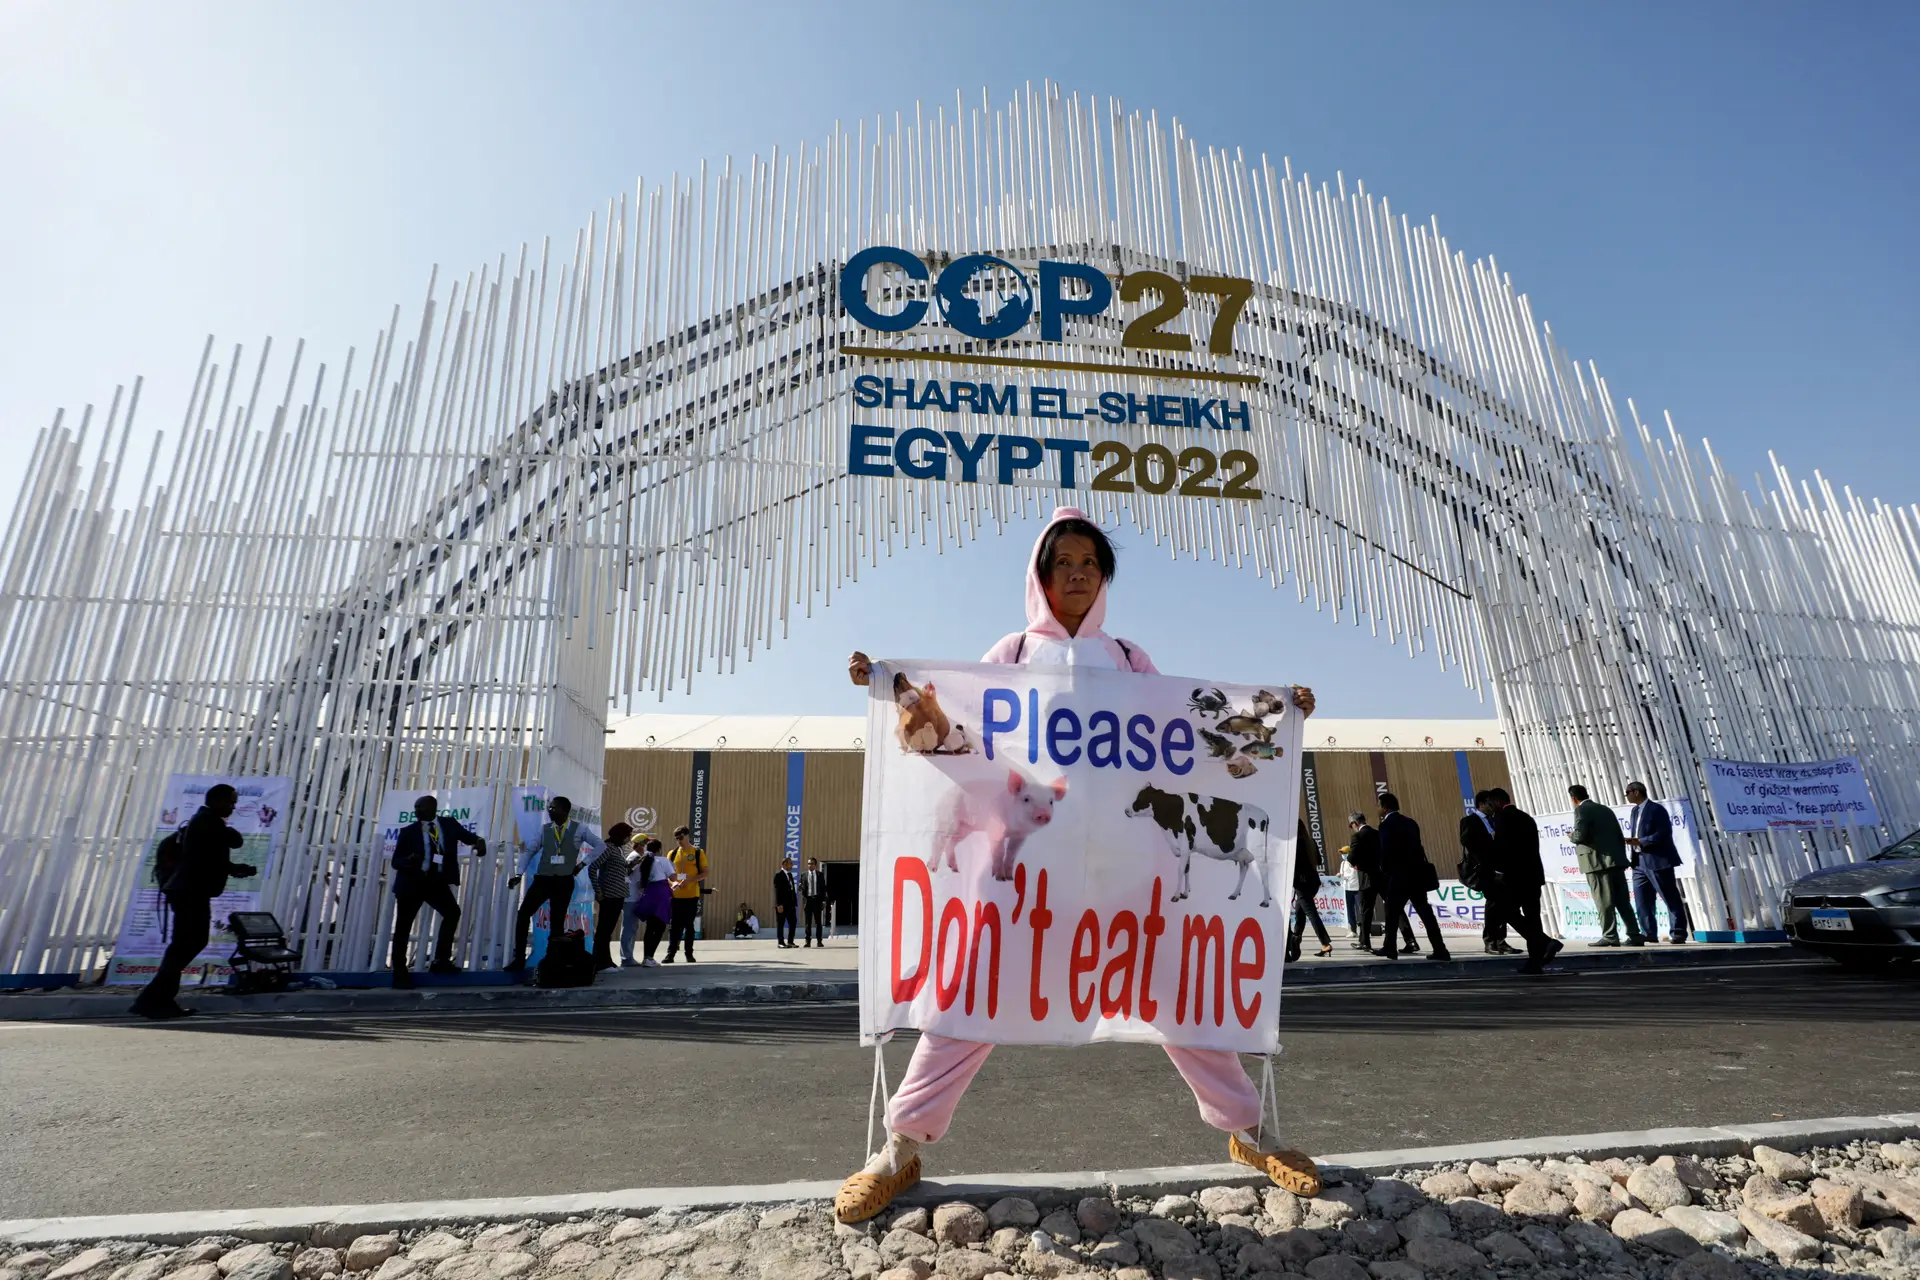 Uma ativista segura um cartaz onde se lê "Por favor não me comam", apelando ao não consumo de carne ou peixe, à entrada do centro de conferências